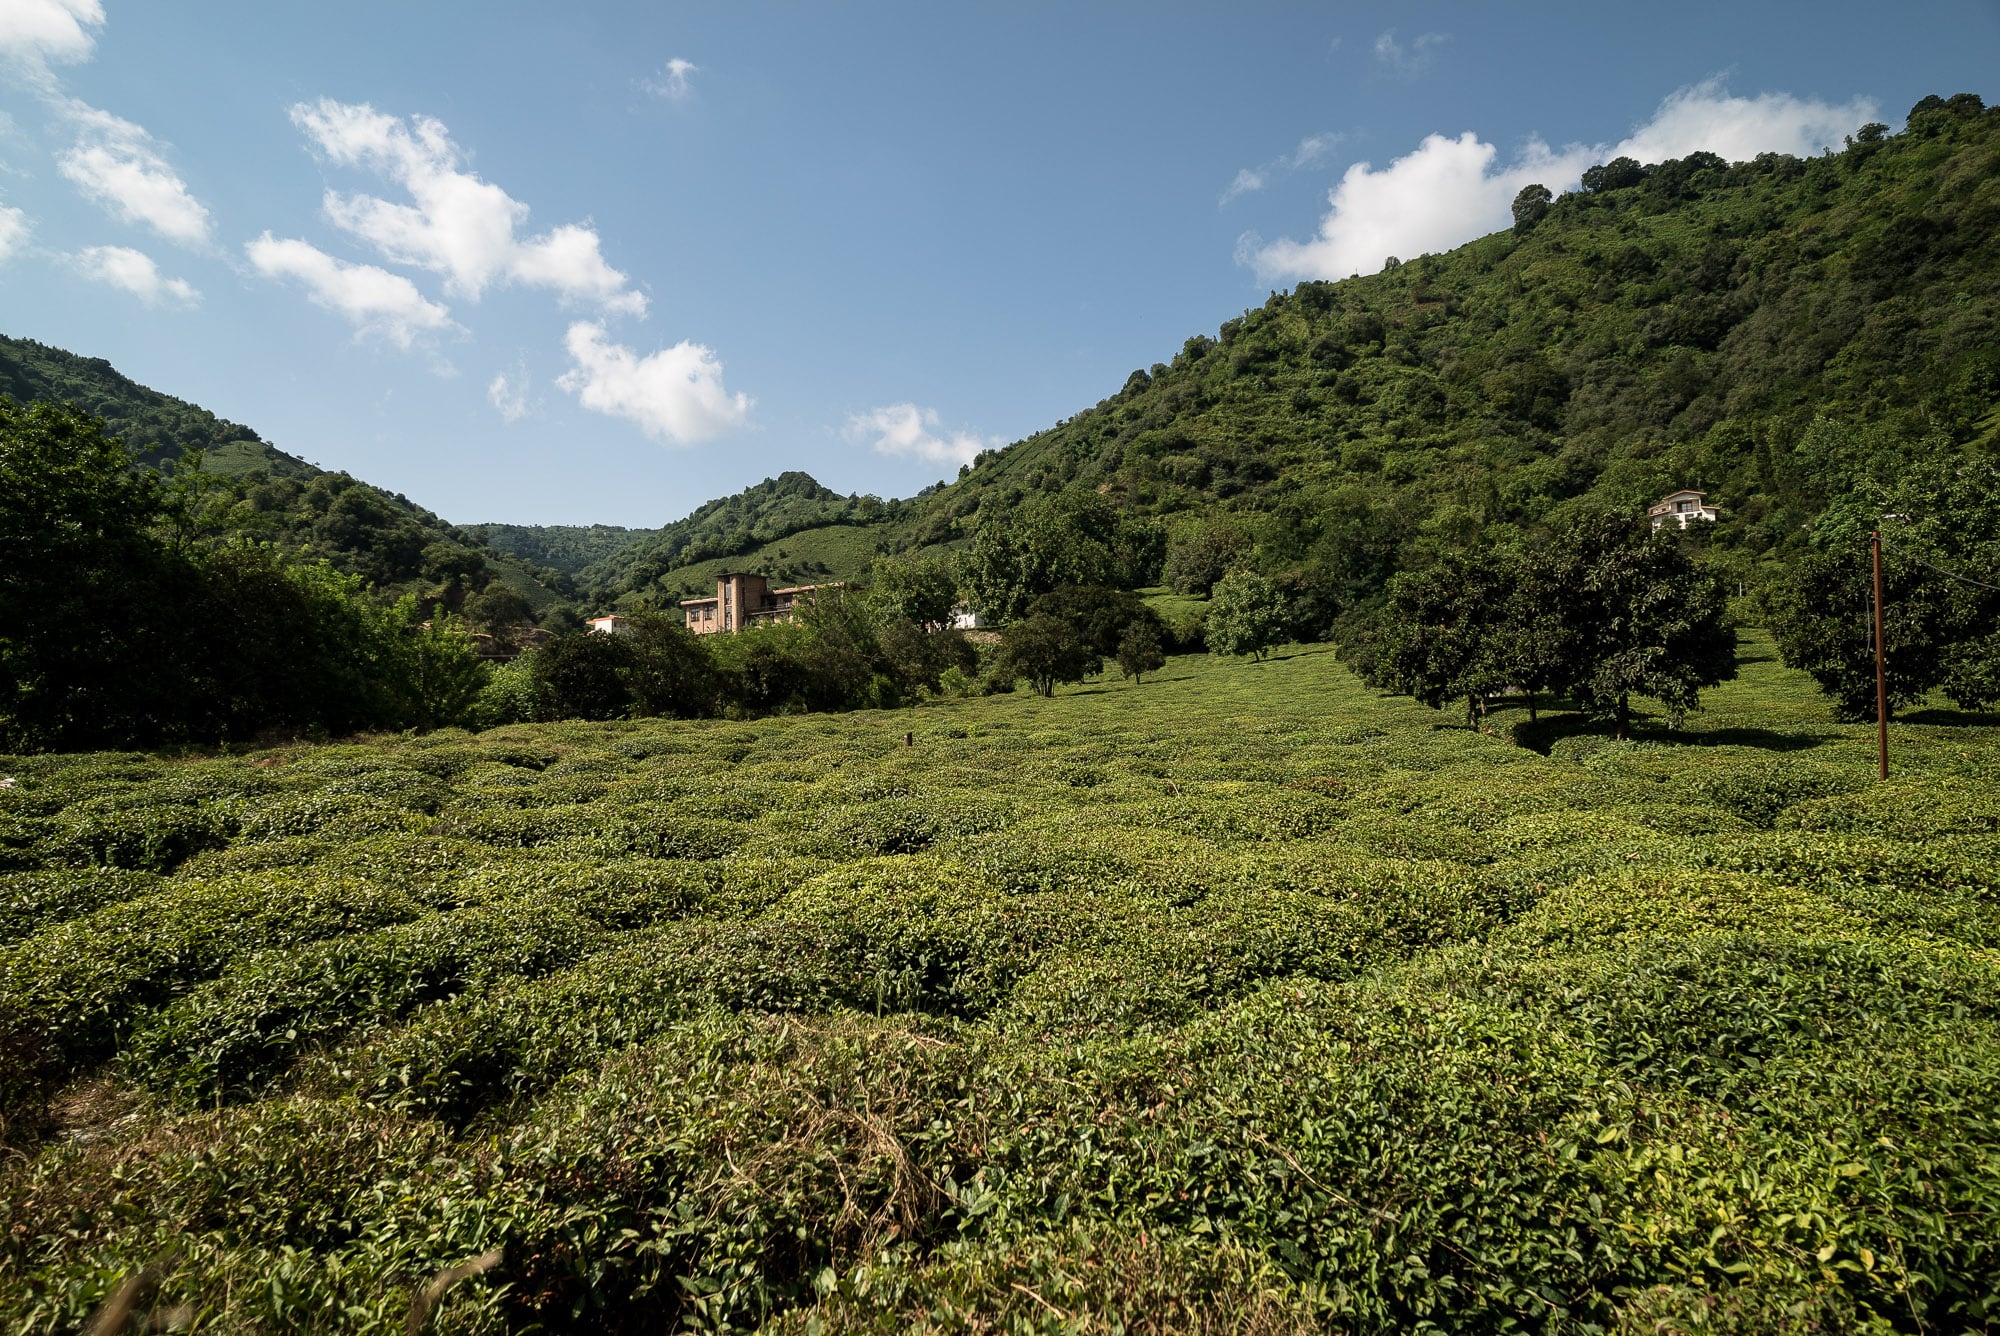 tea fields